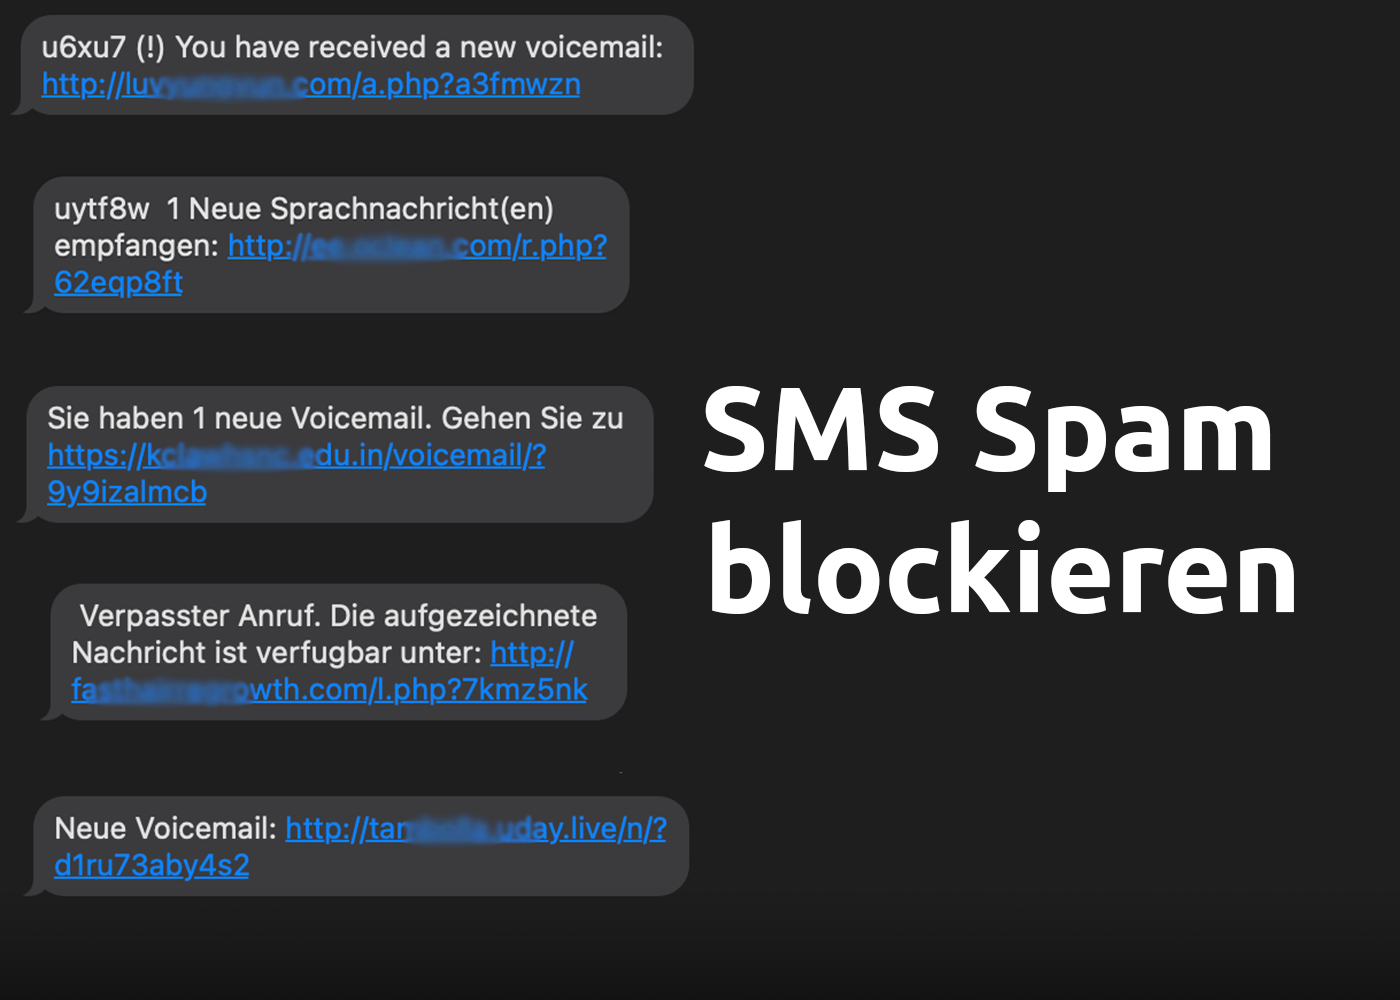 SMS Spam Virus blockieren: "Neue Voicemail", "Verpasster Anruf" etc.